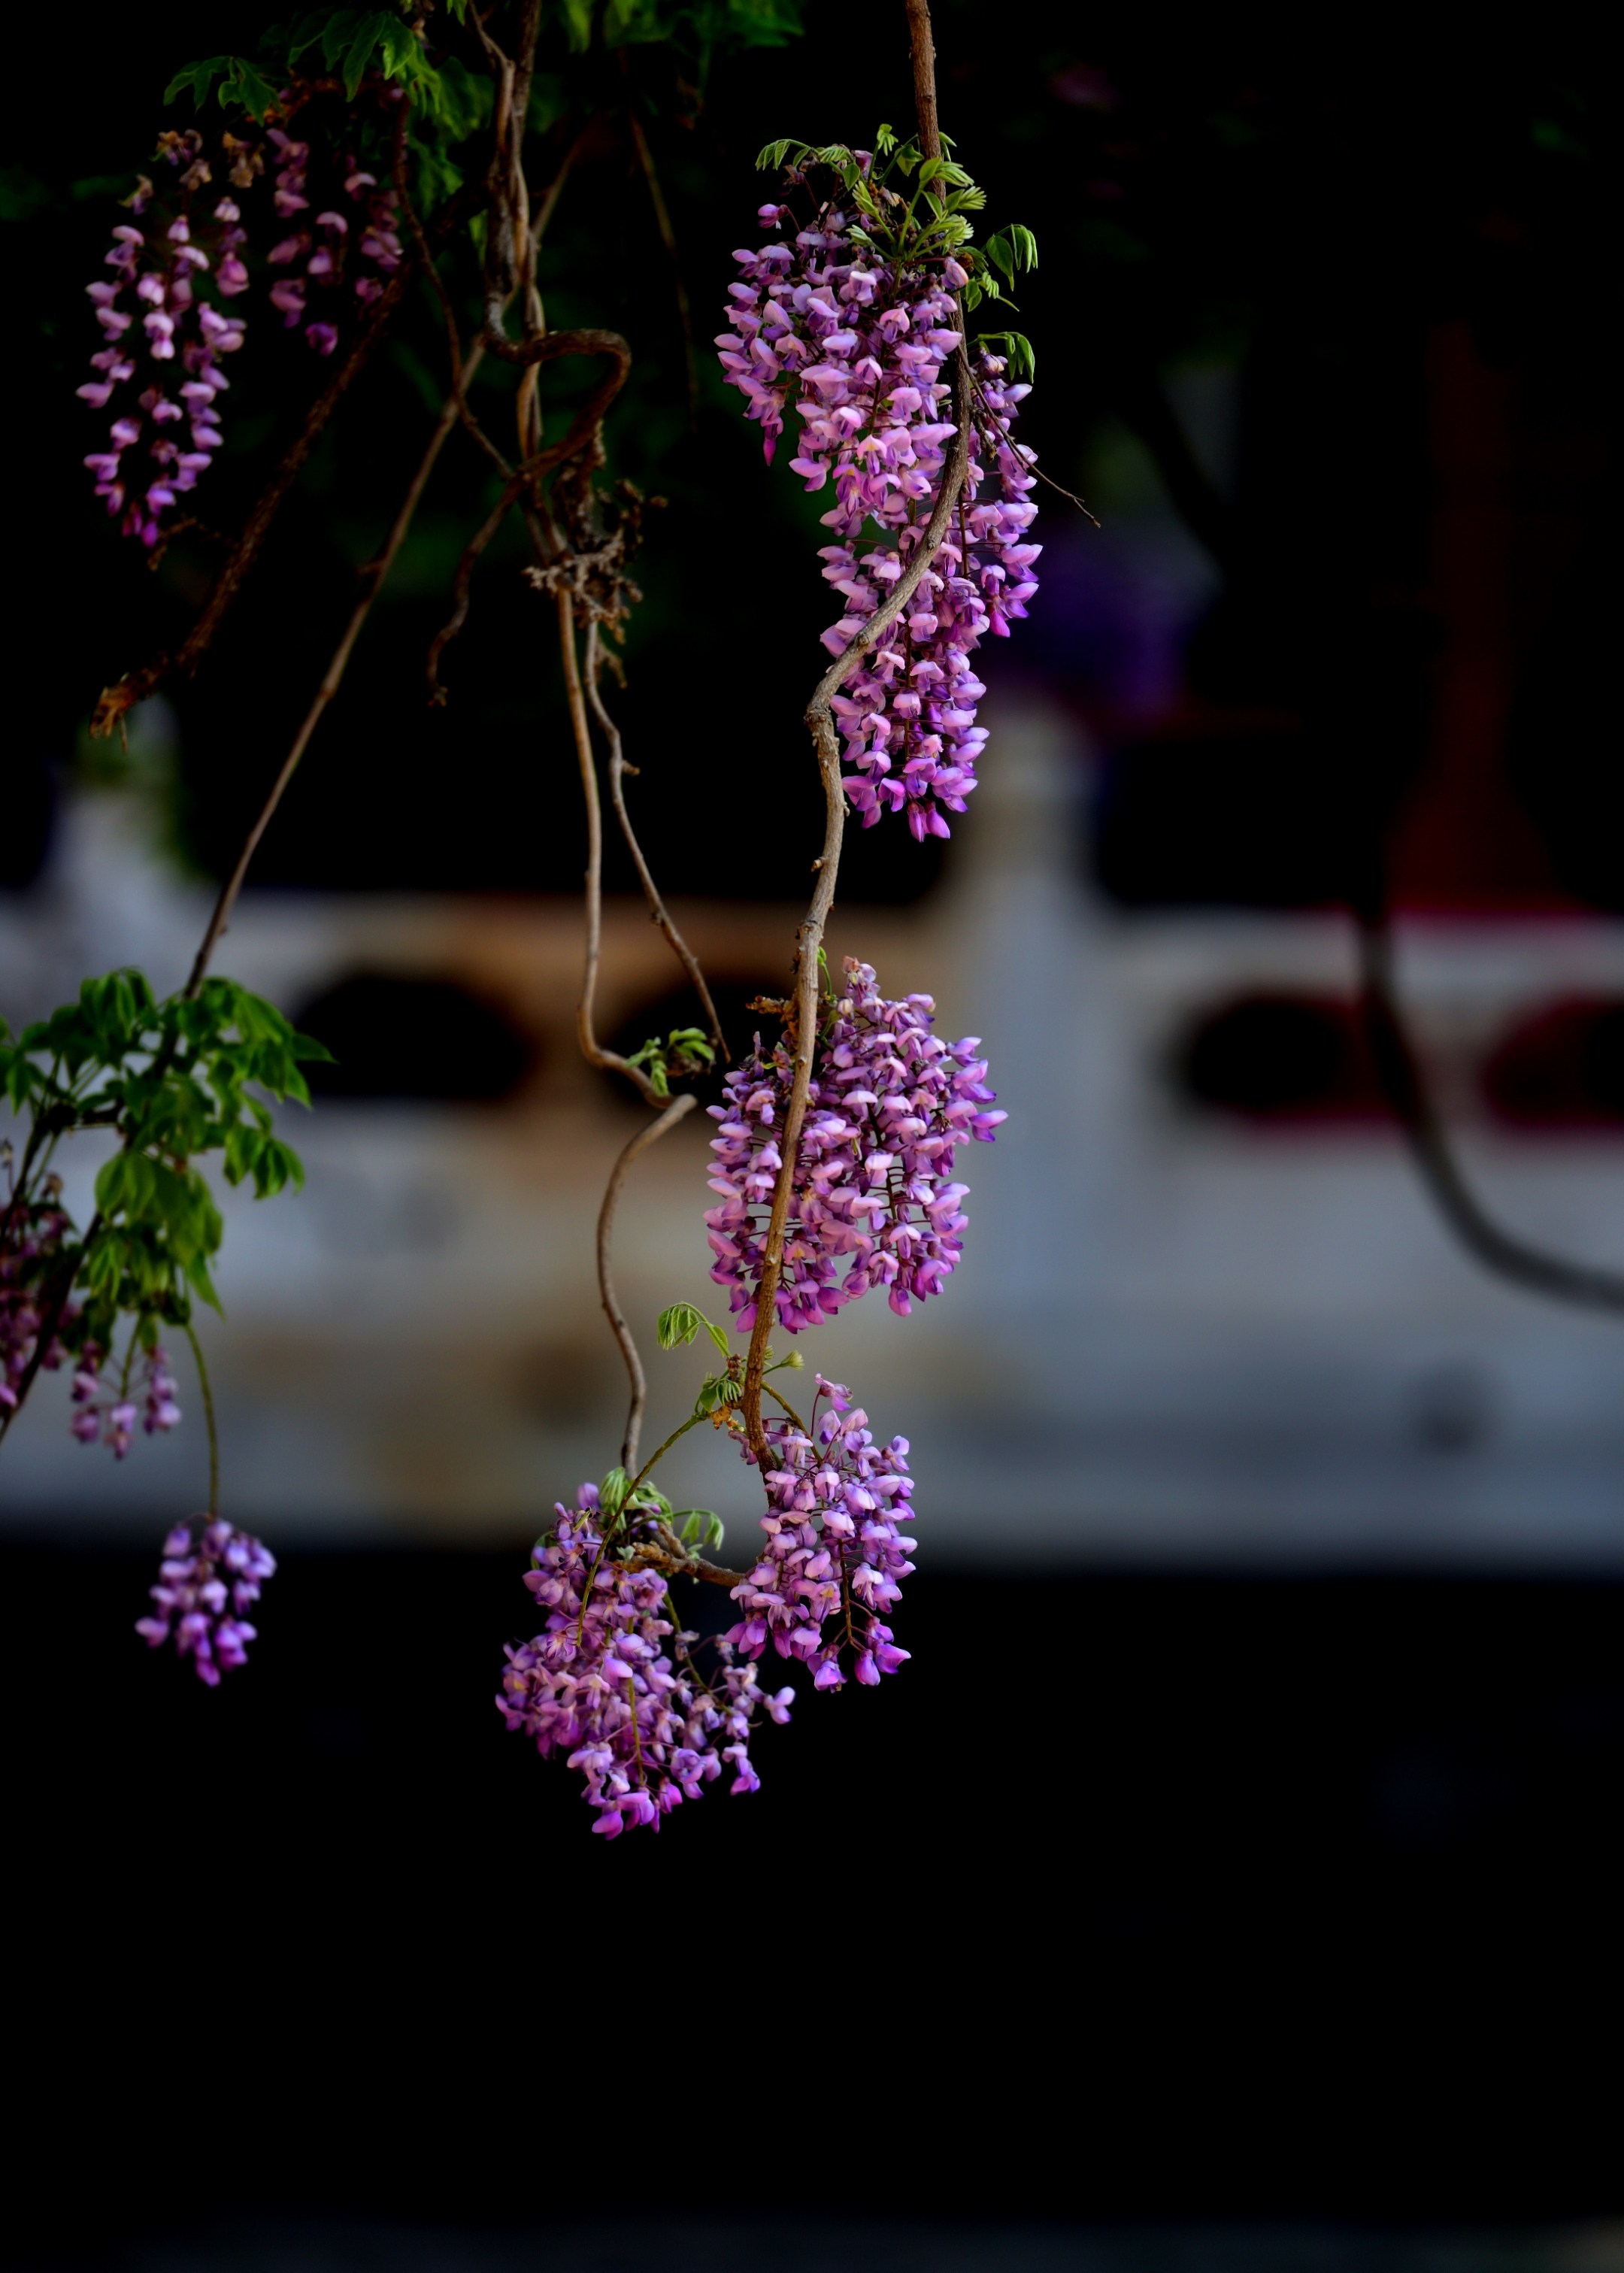 紫藤花属于落叶攀藤灌木,其根茎通常缠绕在墙壁或树干等地方生长.